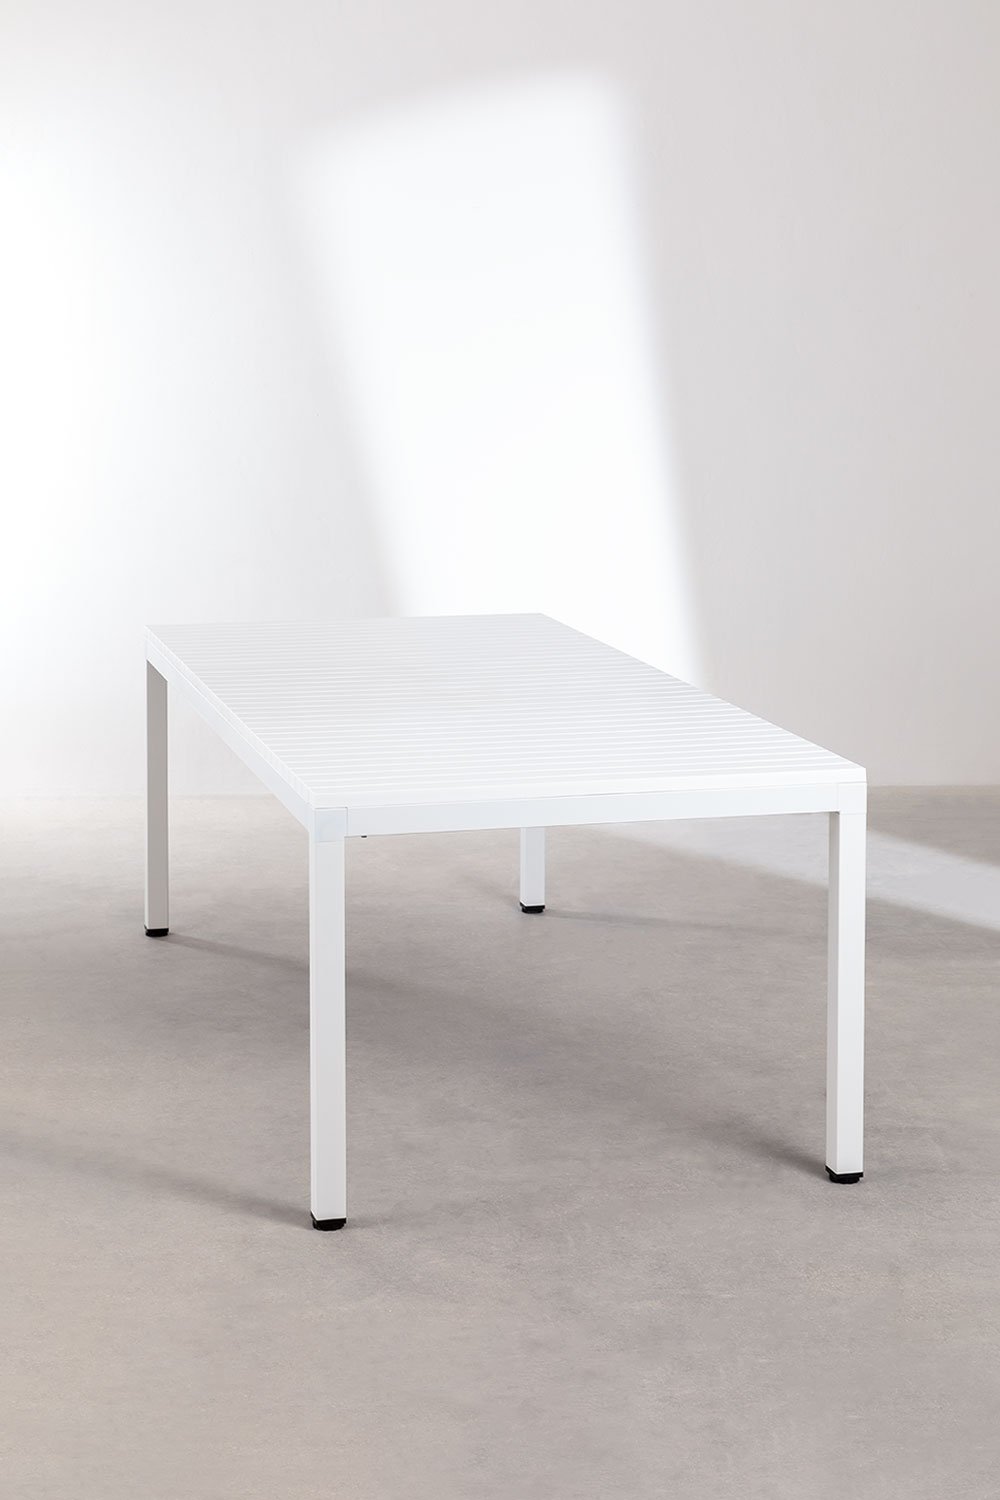 Tavolo da pranzo rettangolare in alluminio (210x100 cm) Marti, immagine della galleria 2